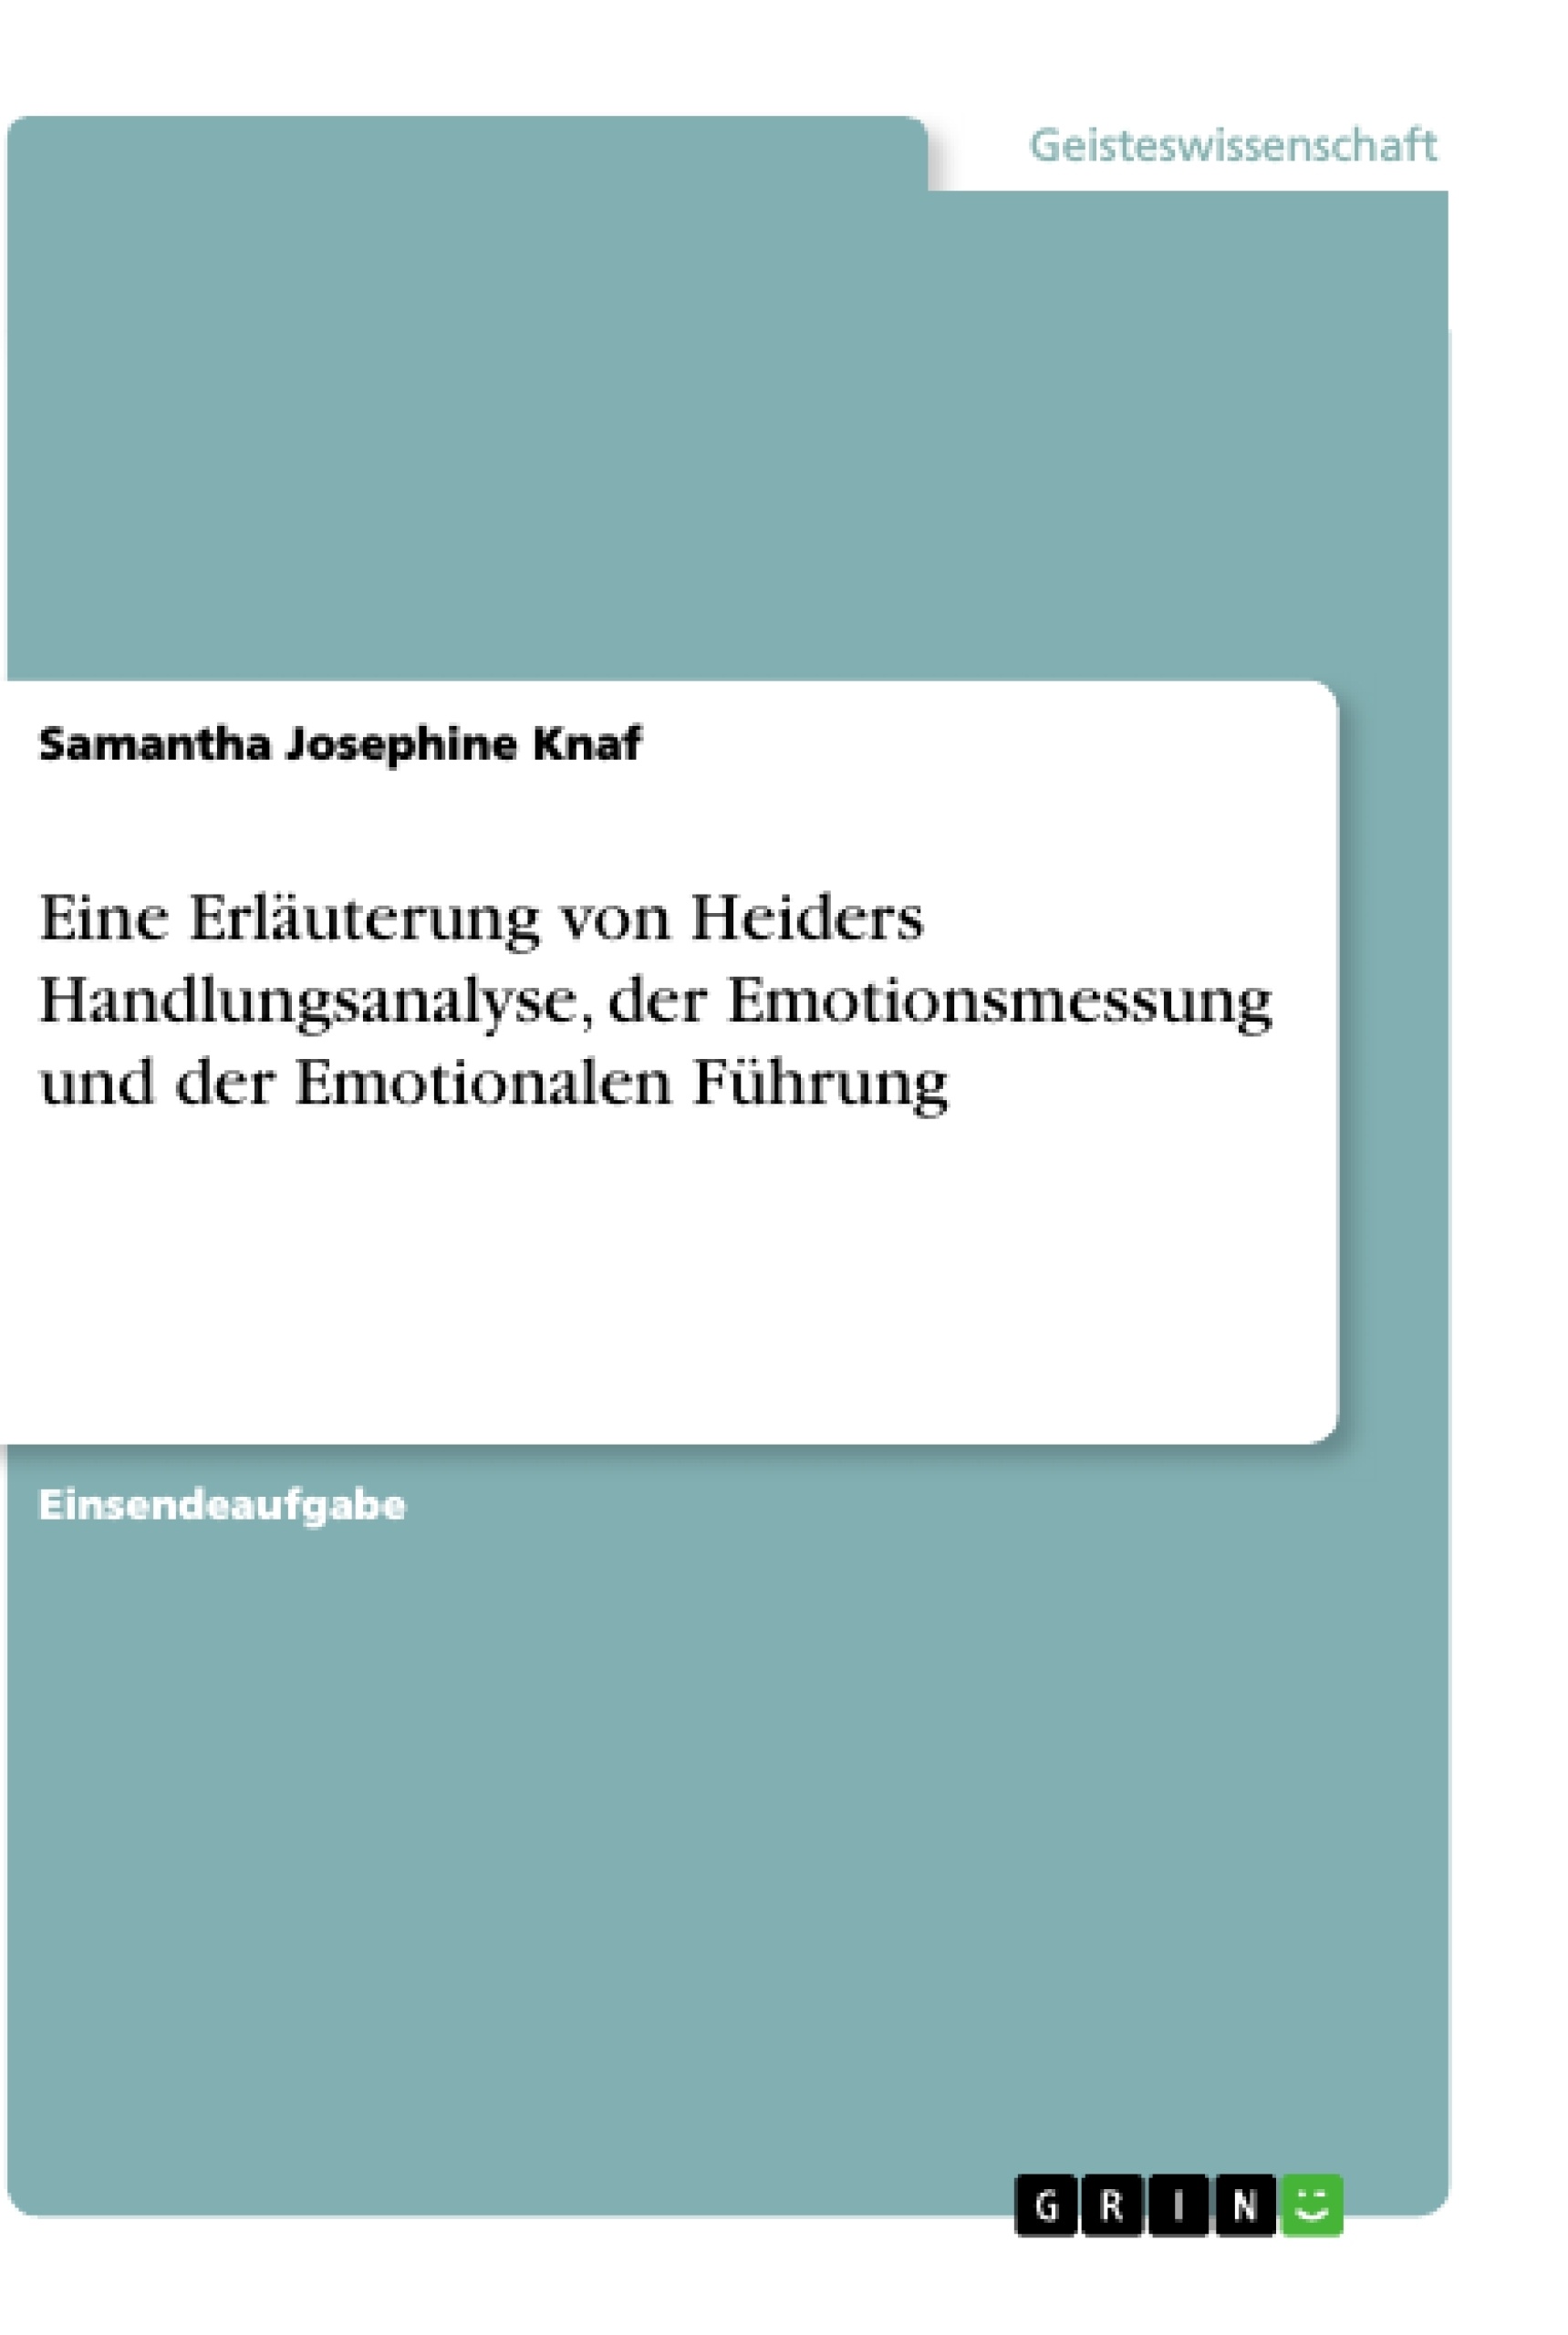 Title: Eine Erläuterung von Heiders Handlungsanalyse, der Emotionsmessung und der Emotionalen Führung